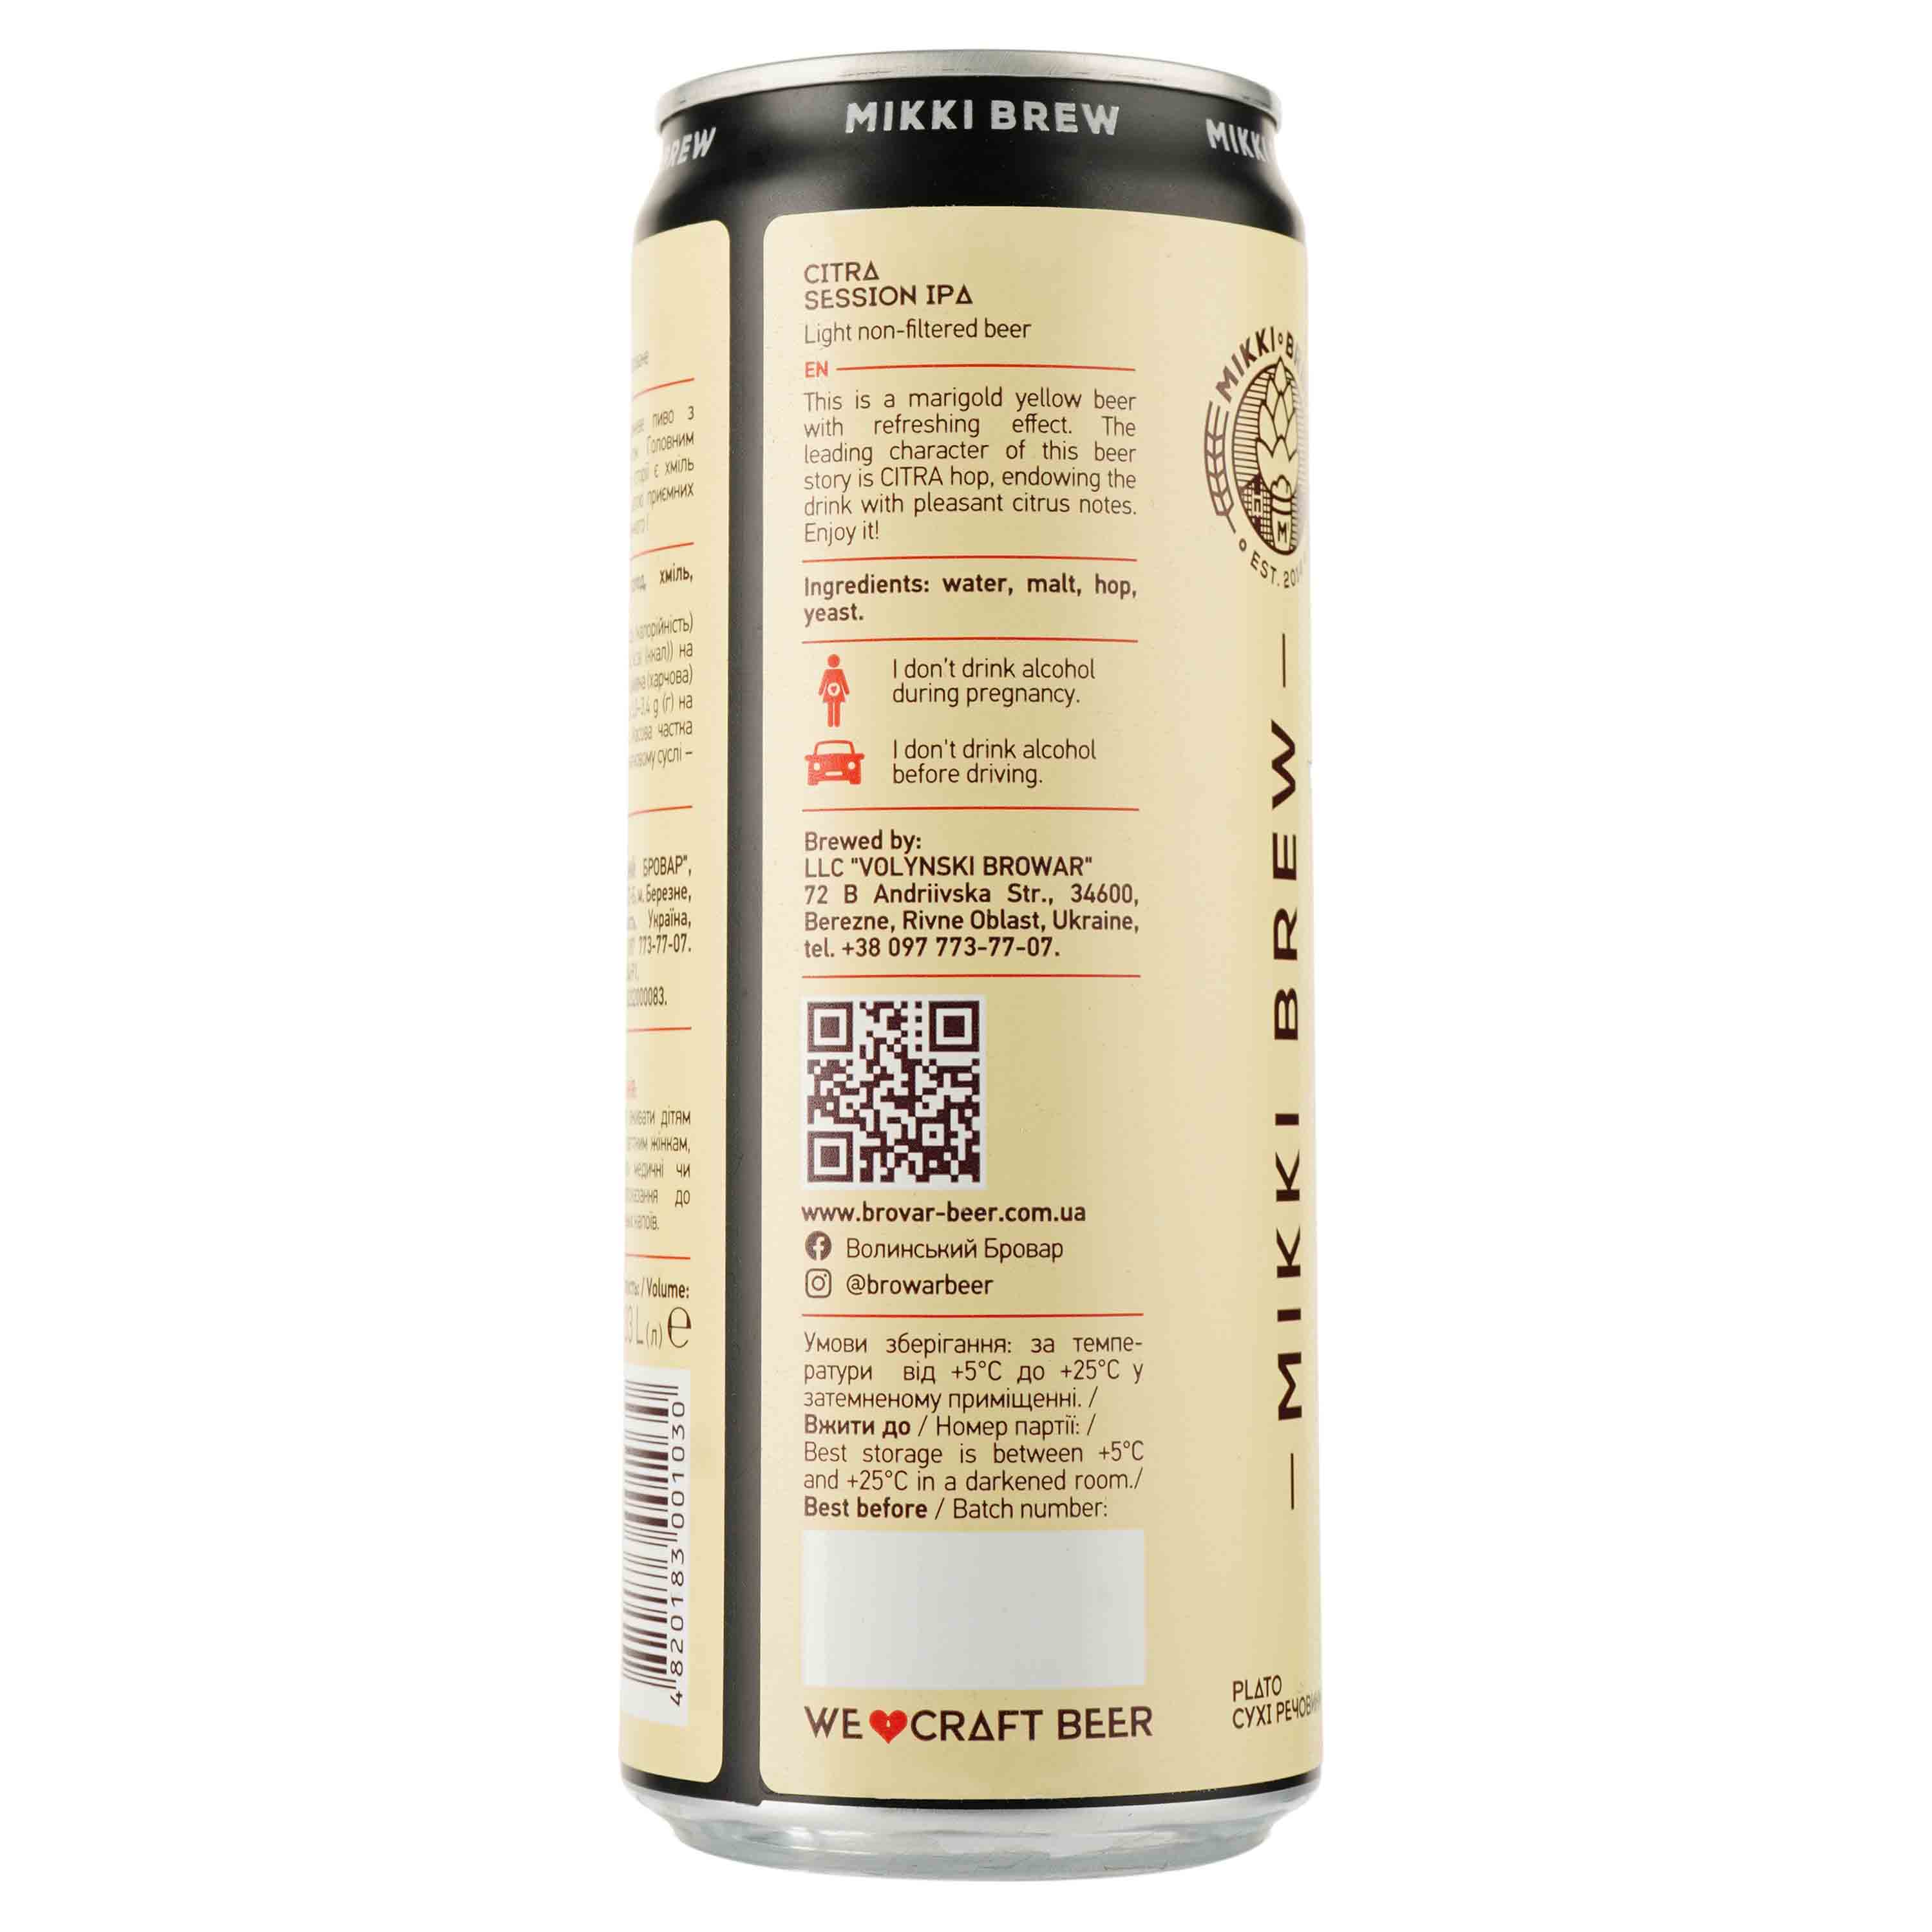 Пиво Mikki Brew Citra, светлое, нефильтрованное, 5,9%, ж/б, 0,33 л - фото 2